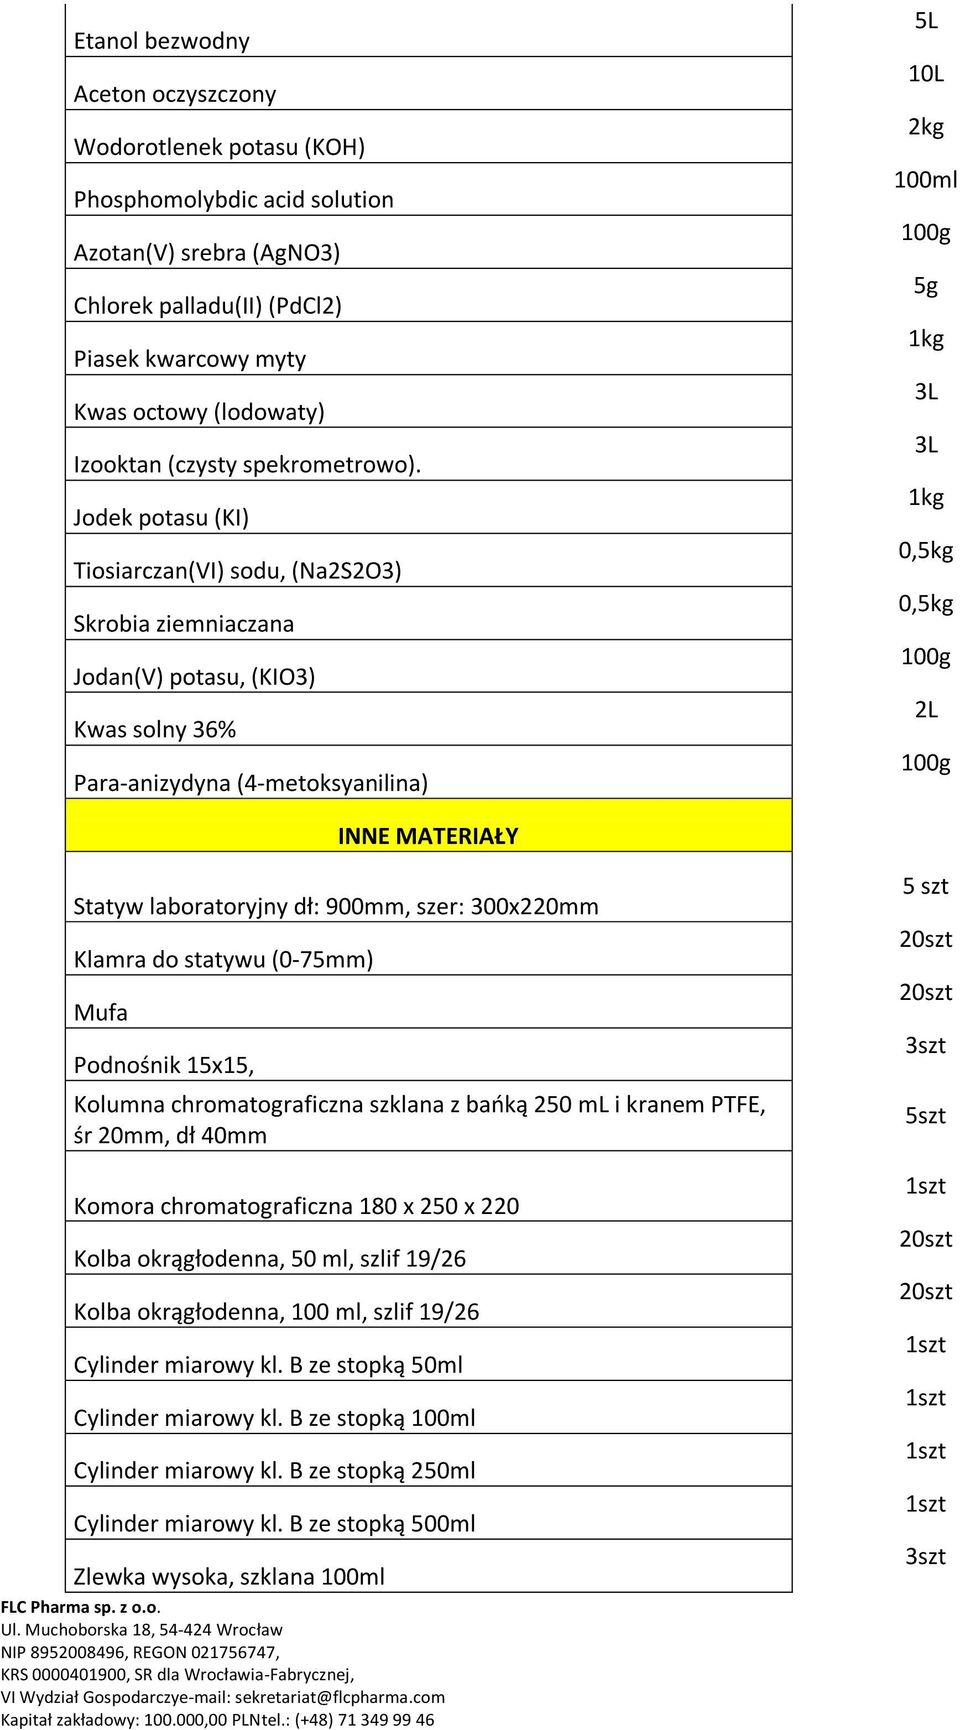 Jodek potasu (KI) Tiosiarczan(VI) sodu, (Na2S2O3) Skrobia ziemniaczana Jodan(V) potasu, (KIO3) Kwas solny 36% Para-anizydyna (4-metoksyanilina) 10L 2kg 100ml 5g 1kg 3L 3L 1kg 0,5kg 0,5kg 2L INNE